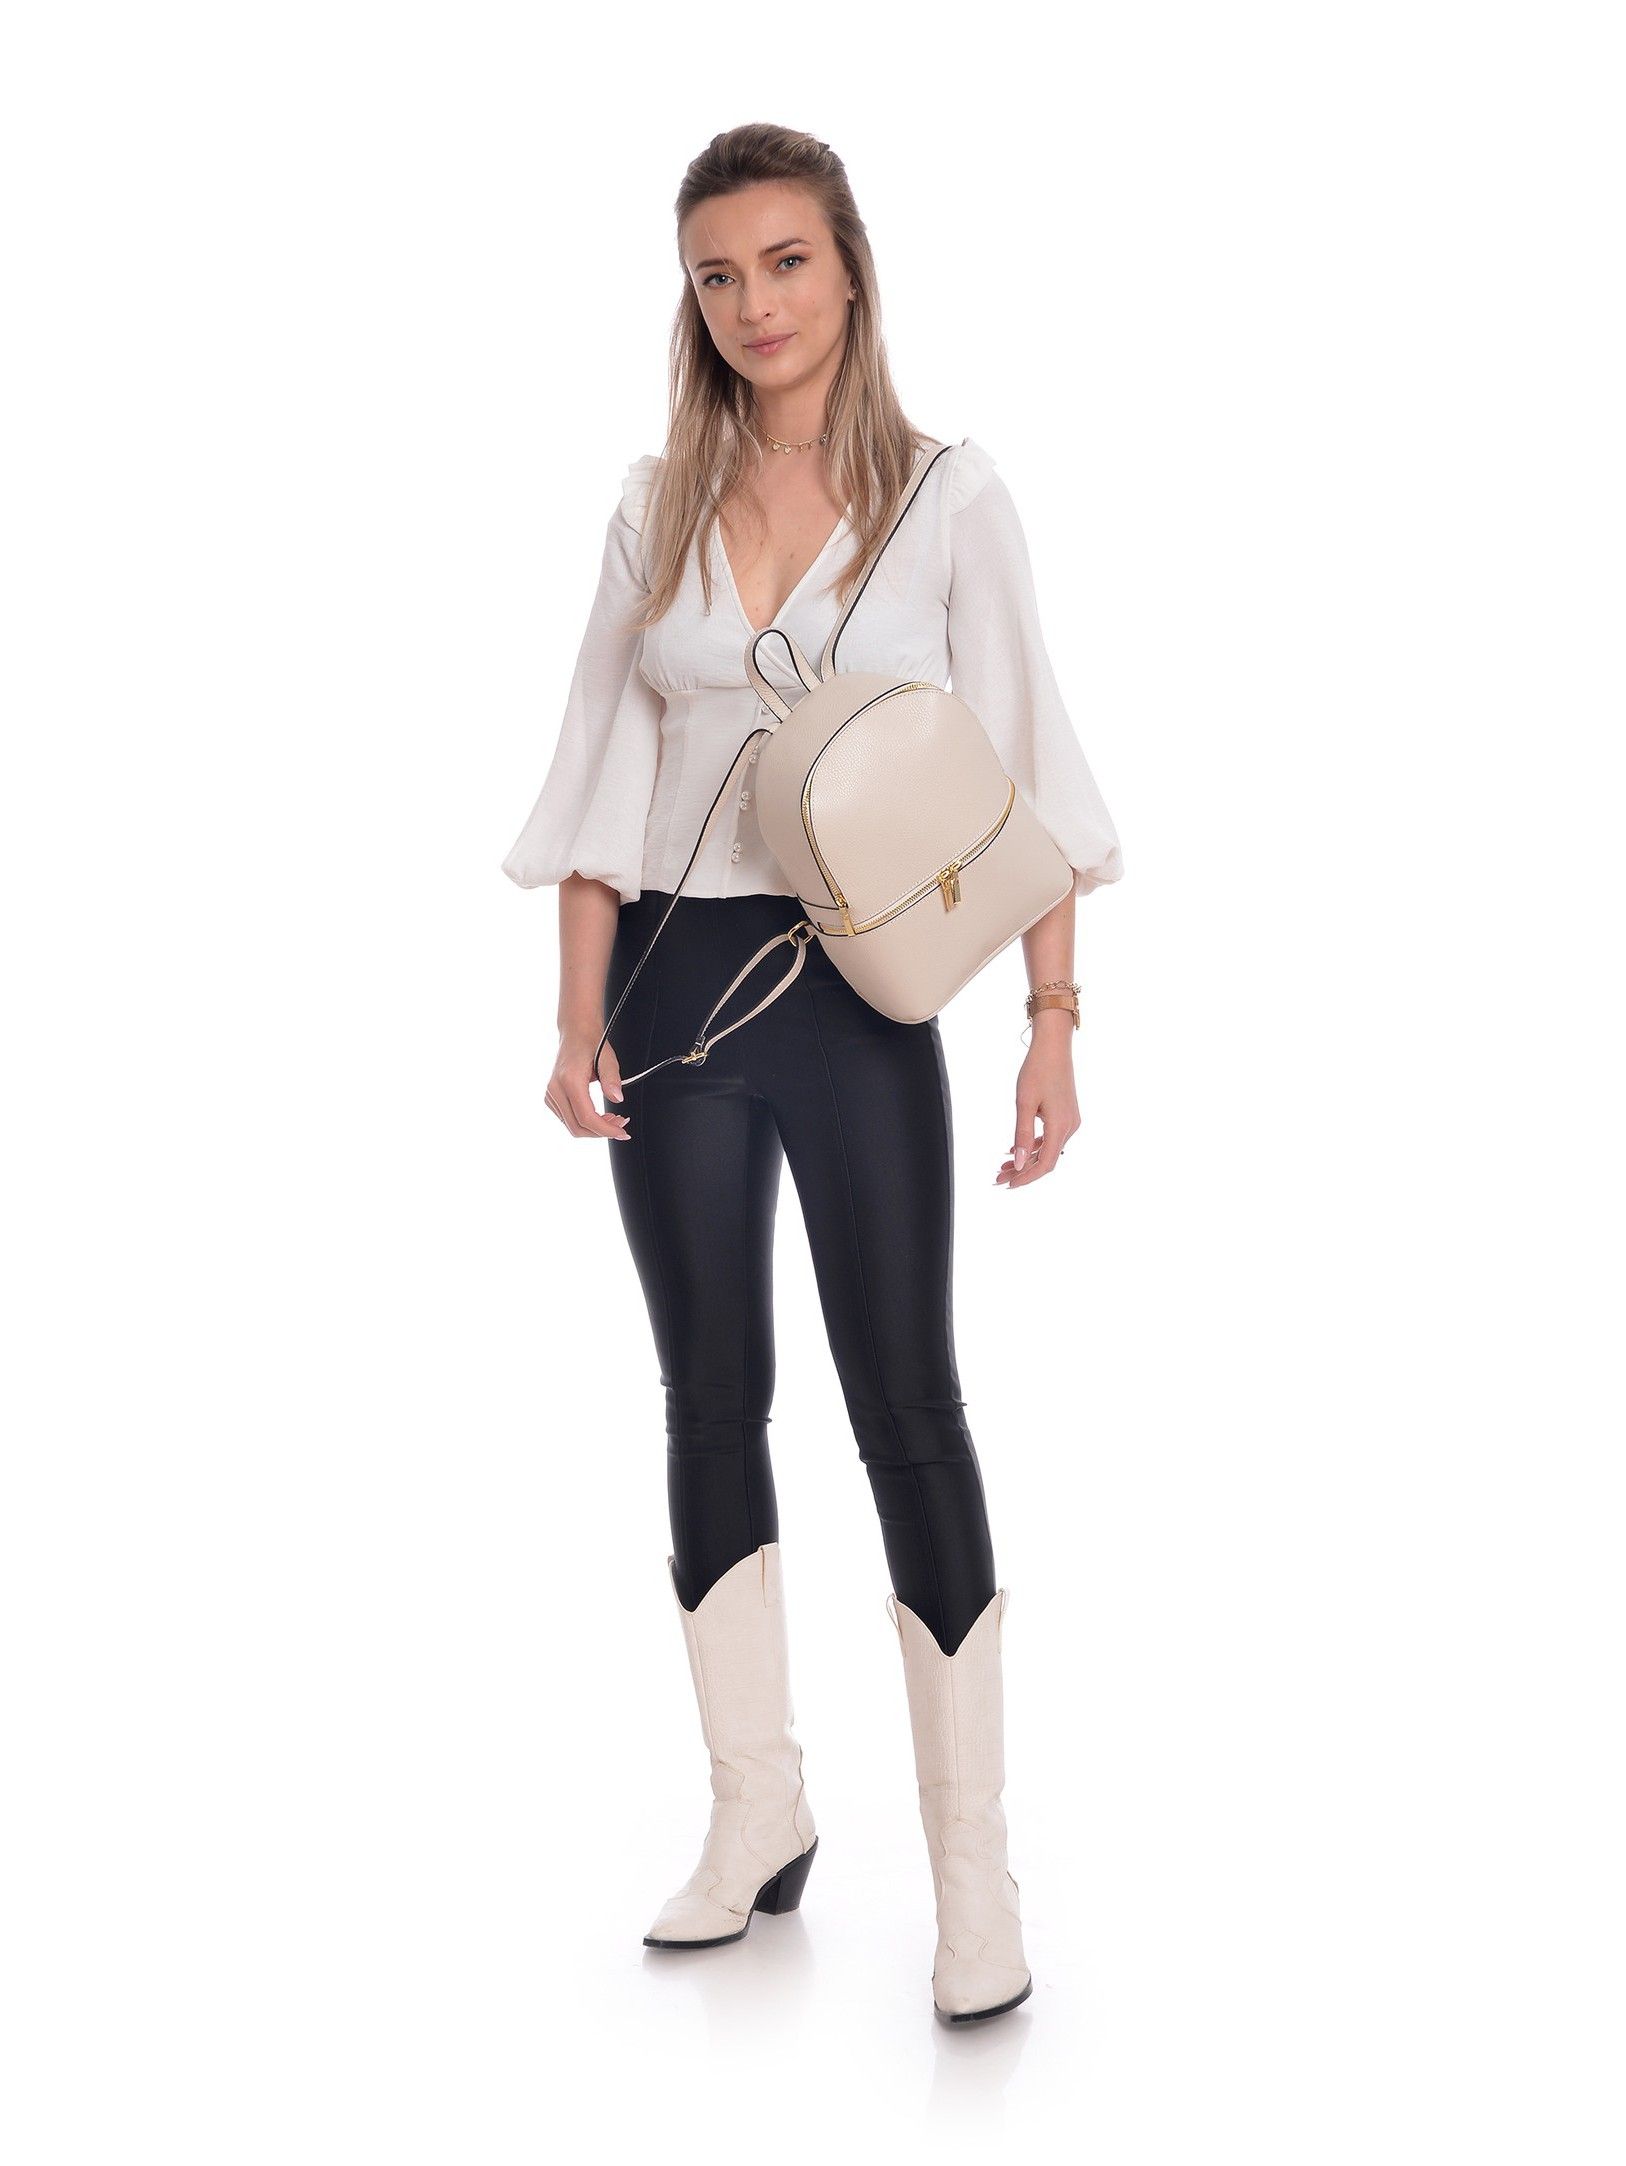 Backpack
100% cow leather
Top zip closure
Front zip pocket
Dimensions (L) 29x23x10 cm
Handle: 19.5 cm
Shoulder strap: 80cm x 5